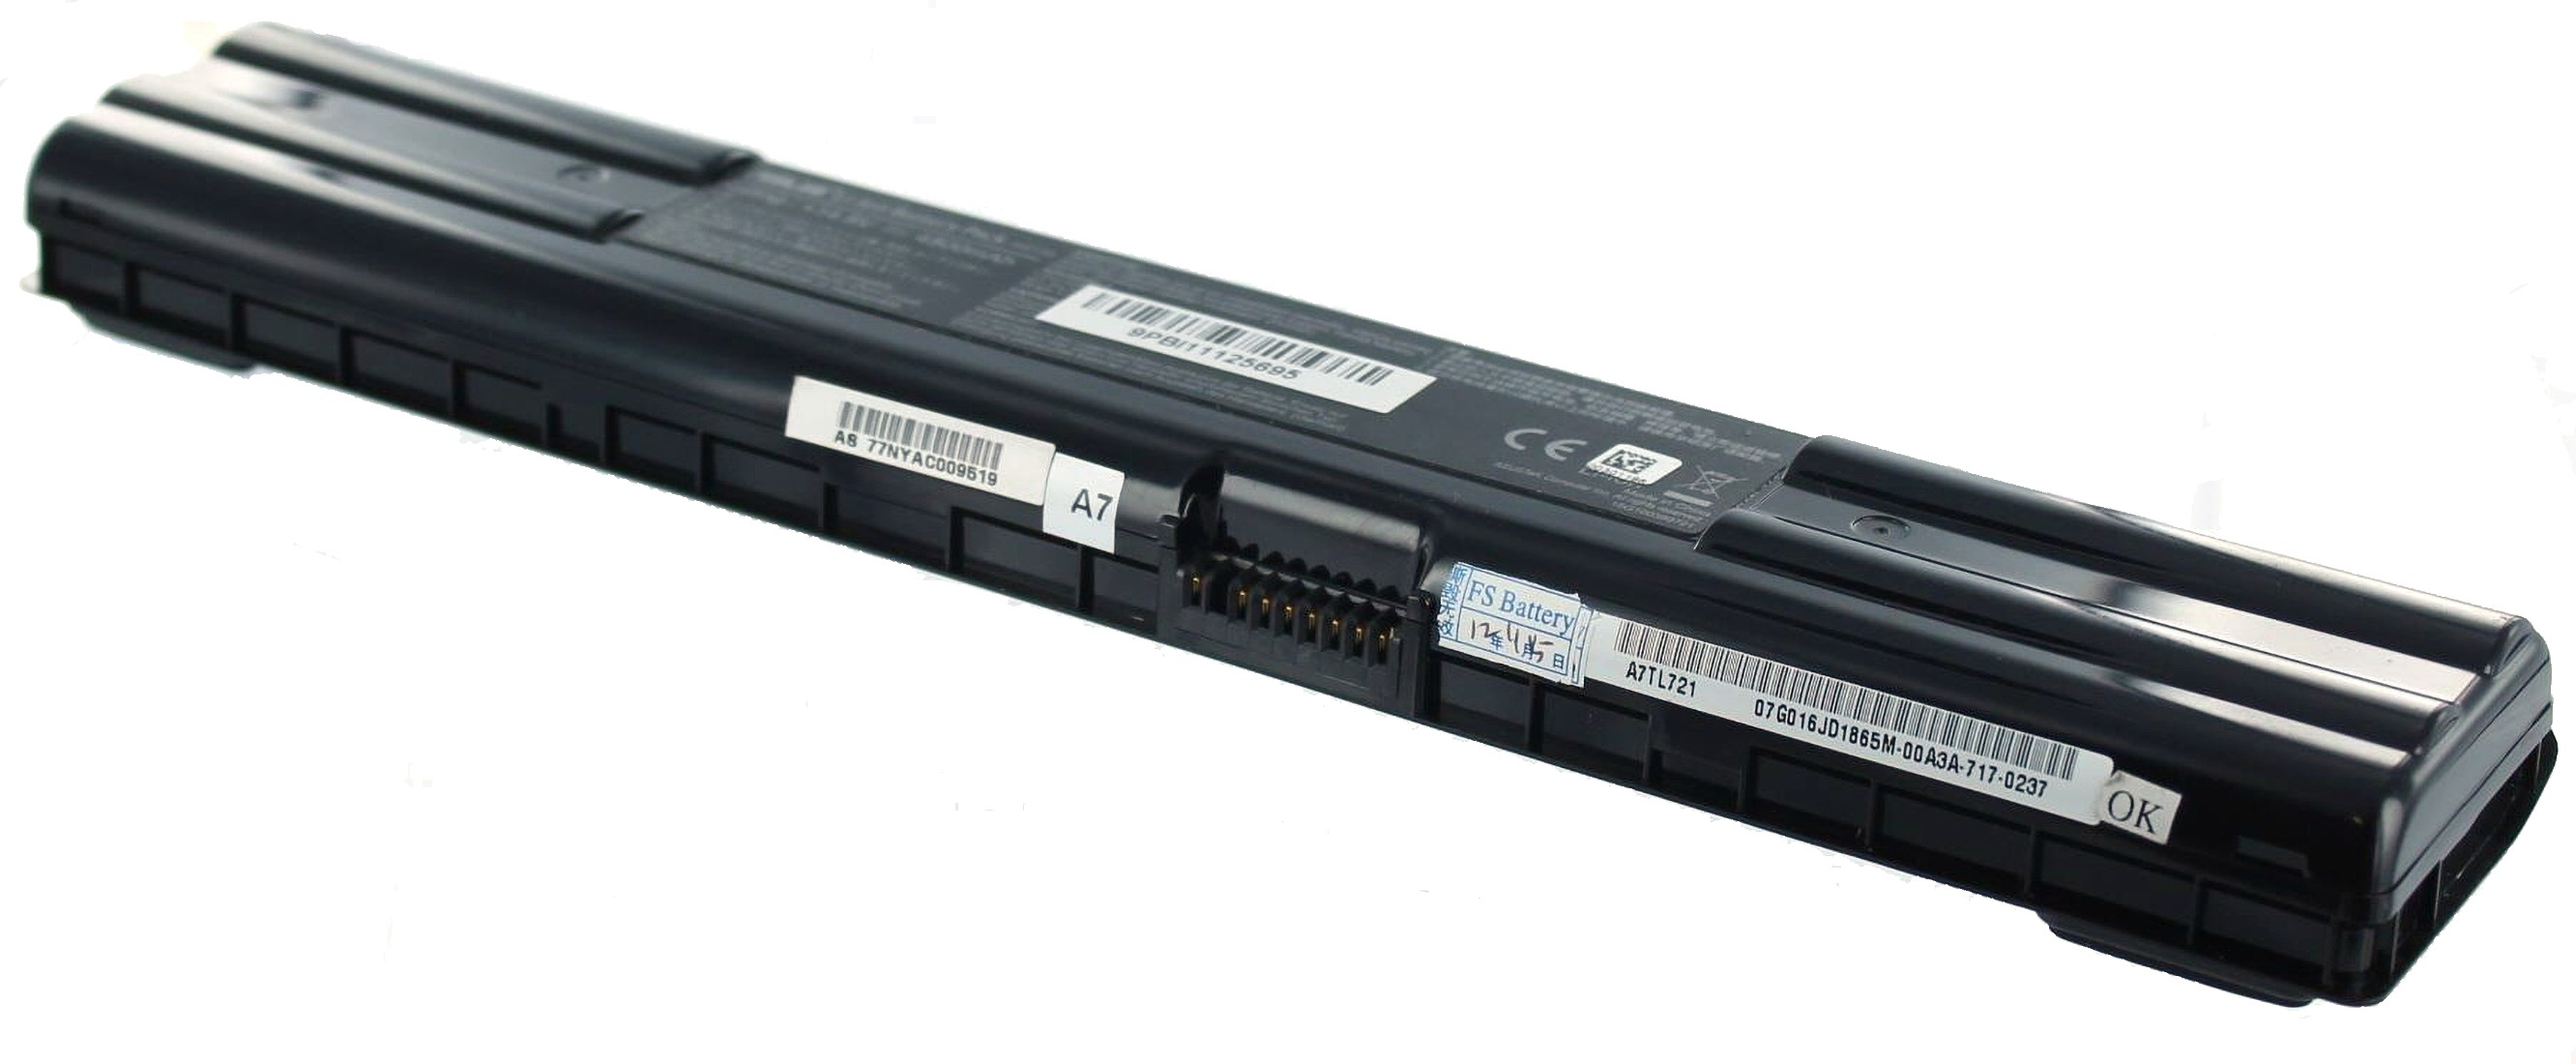 AGI Akku kompatibel mit Asus 4400 Notebookakku, Volt, mAh 90-NDK1B1000 14.8 Li-Ion